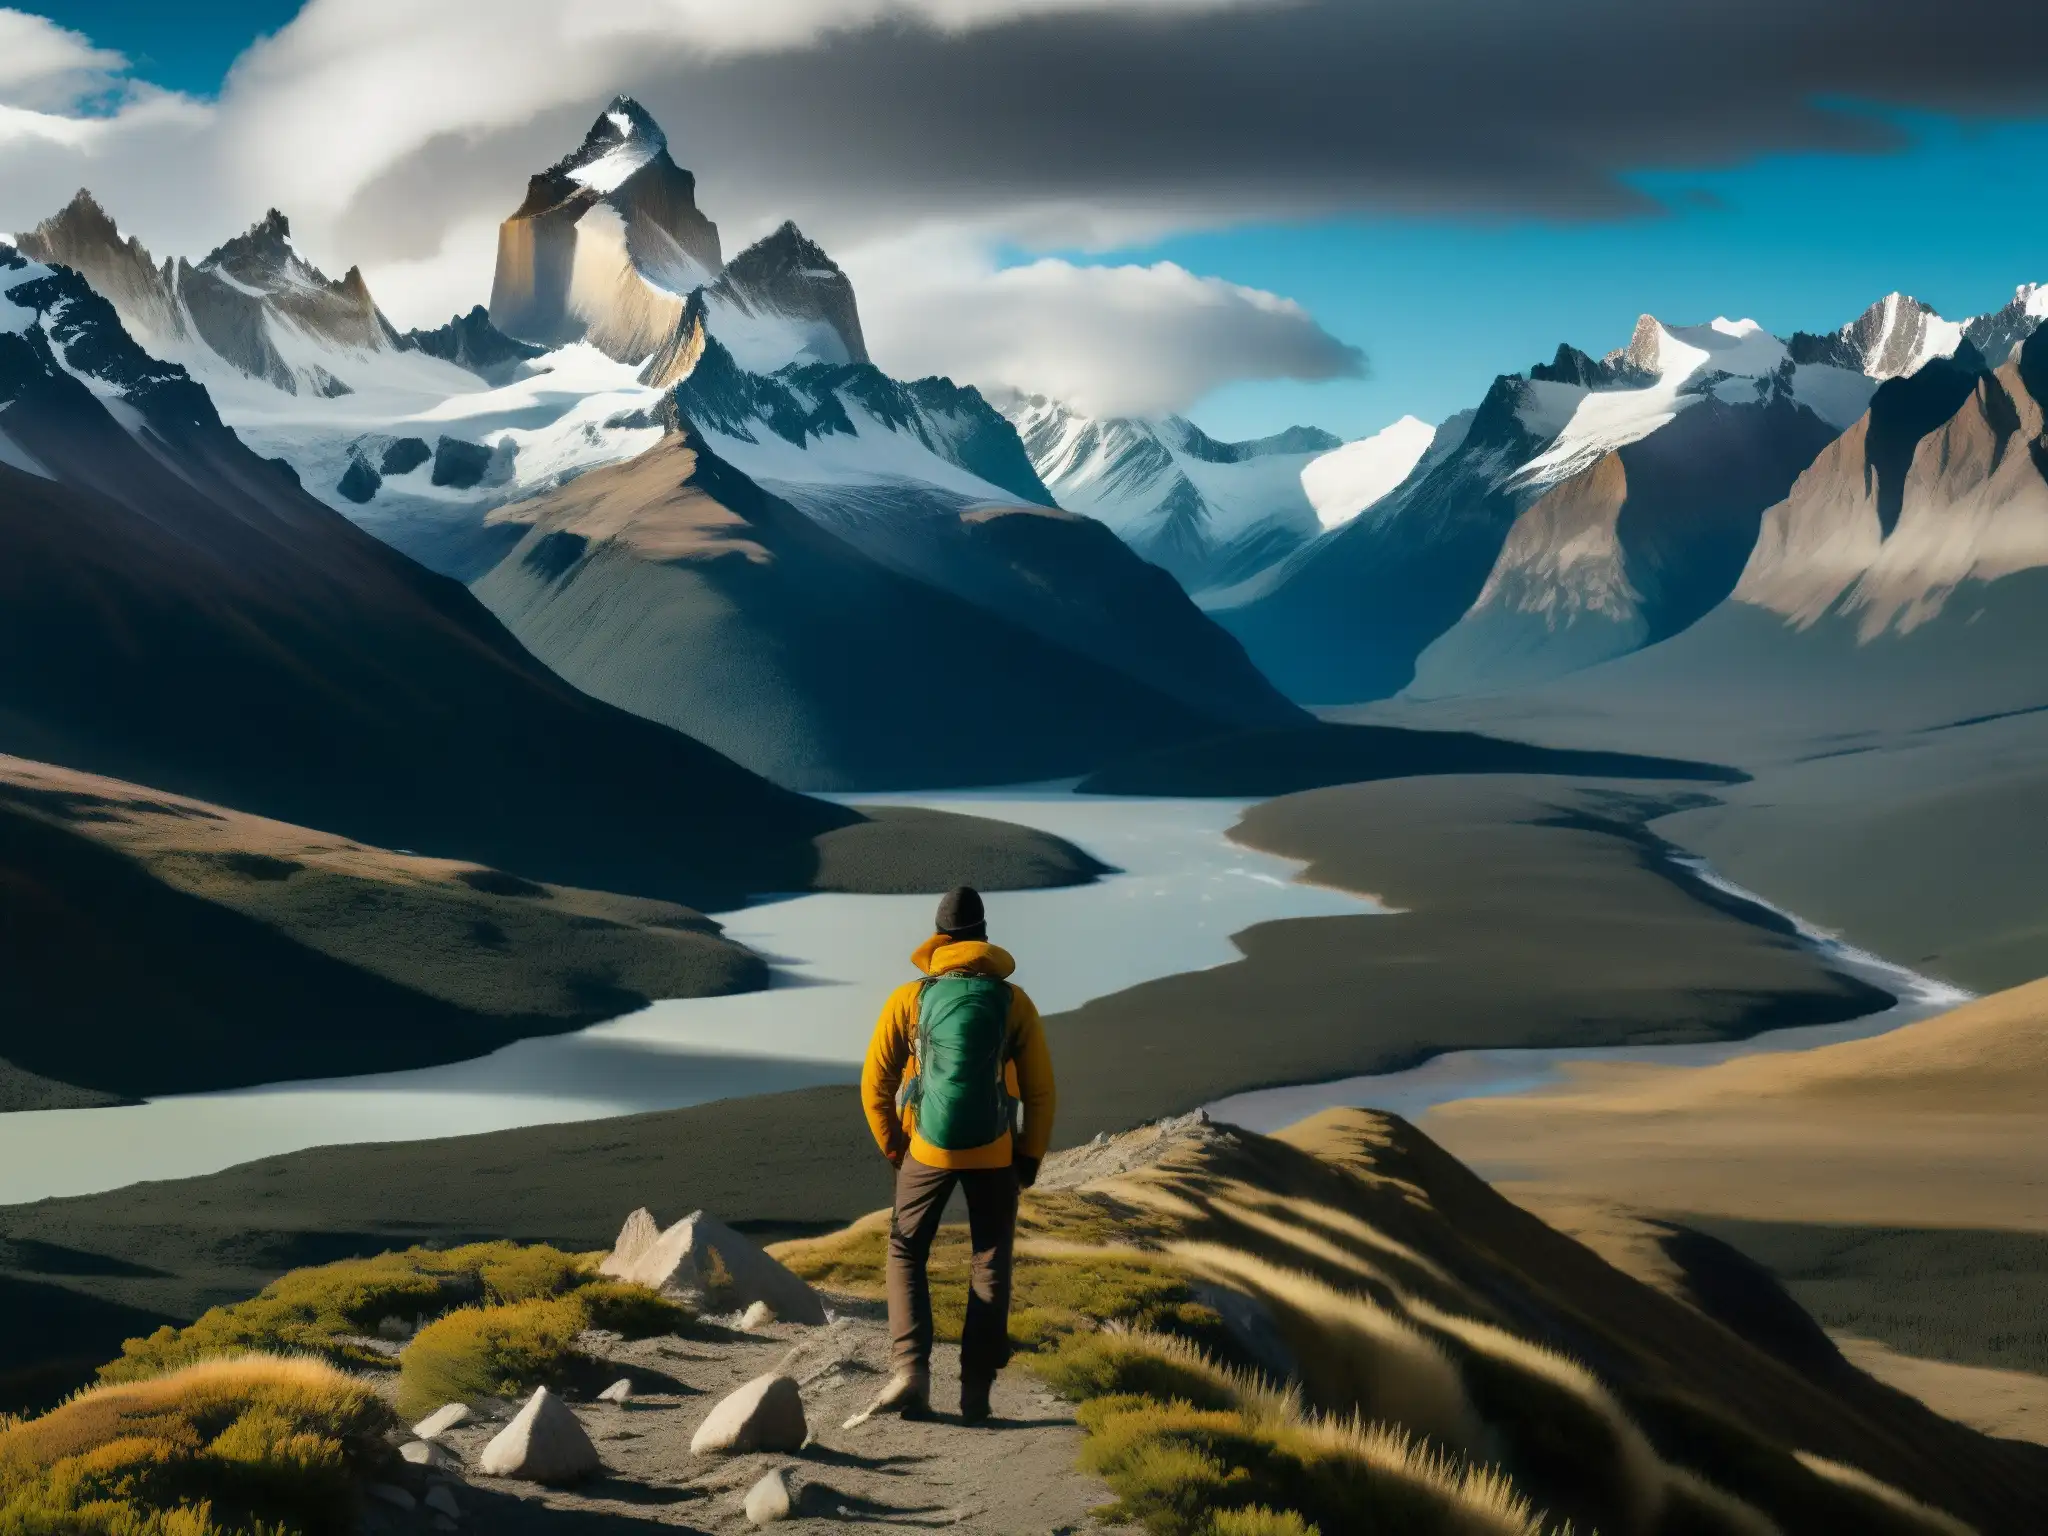 Vista panorámica de la salvaje y majestuosa región de la Patagonia, con montañas nevadas al fondo y una vasta tierra salvaje